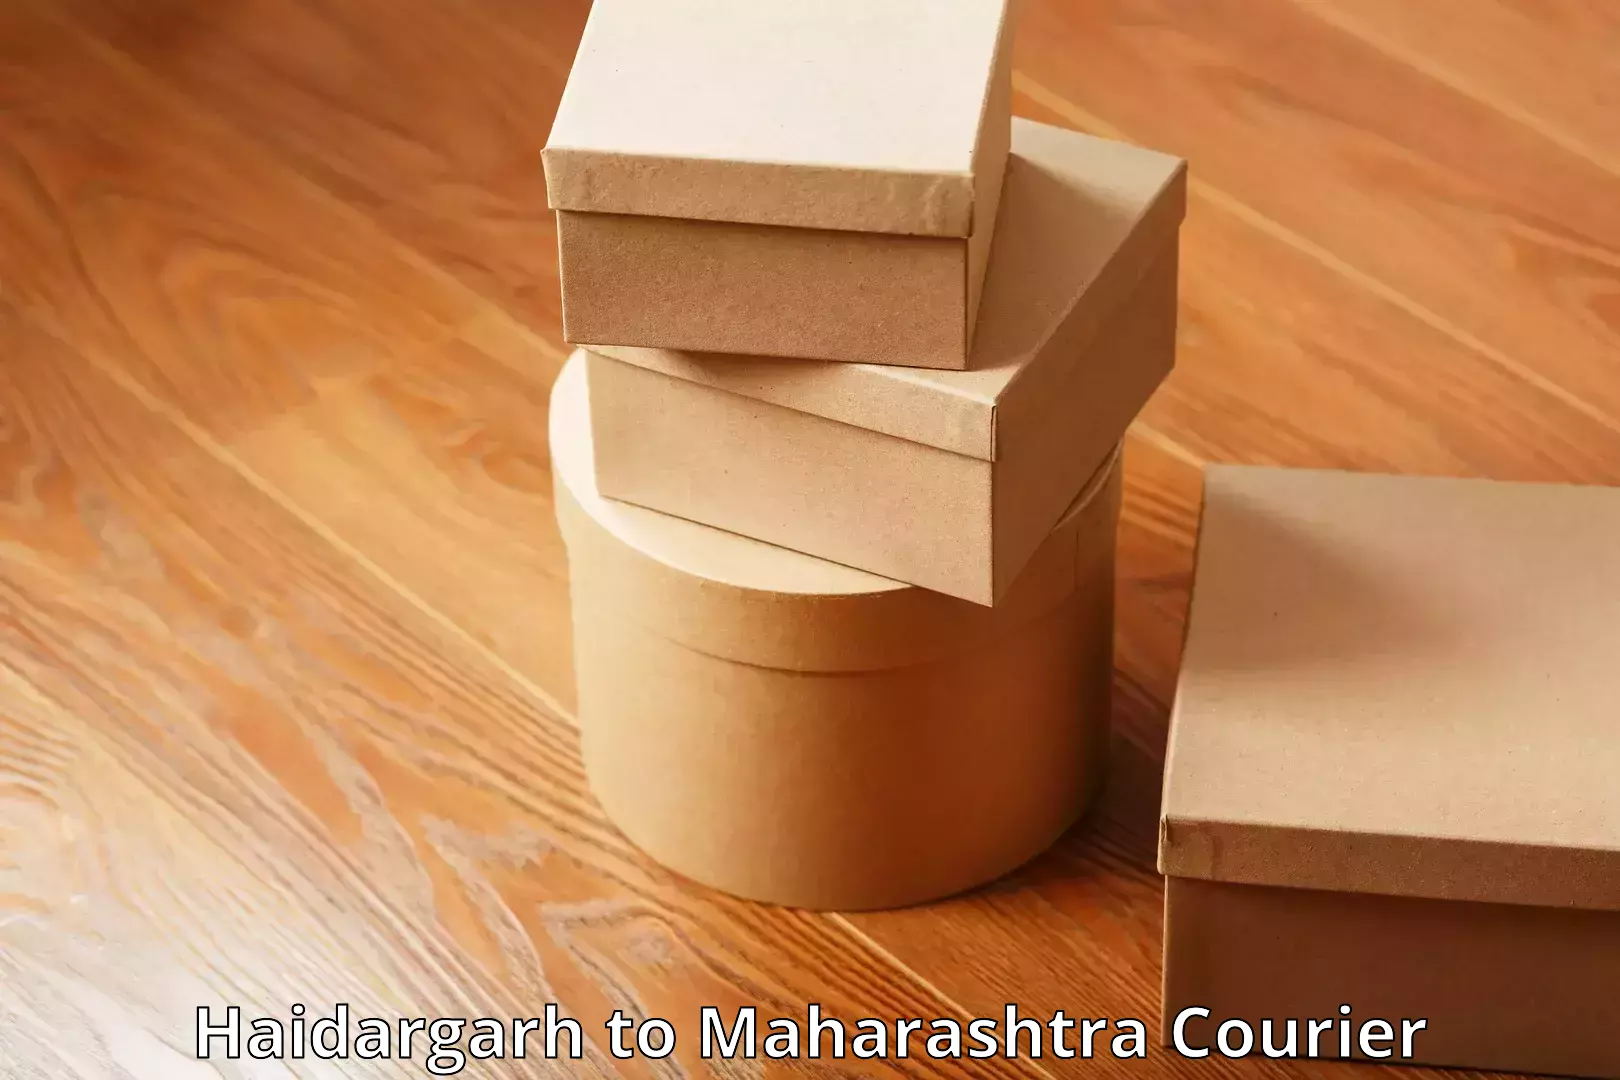 Baggage shipping experience Haidargarh to Maharashtra